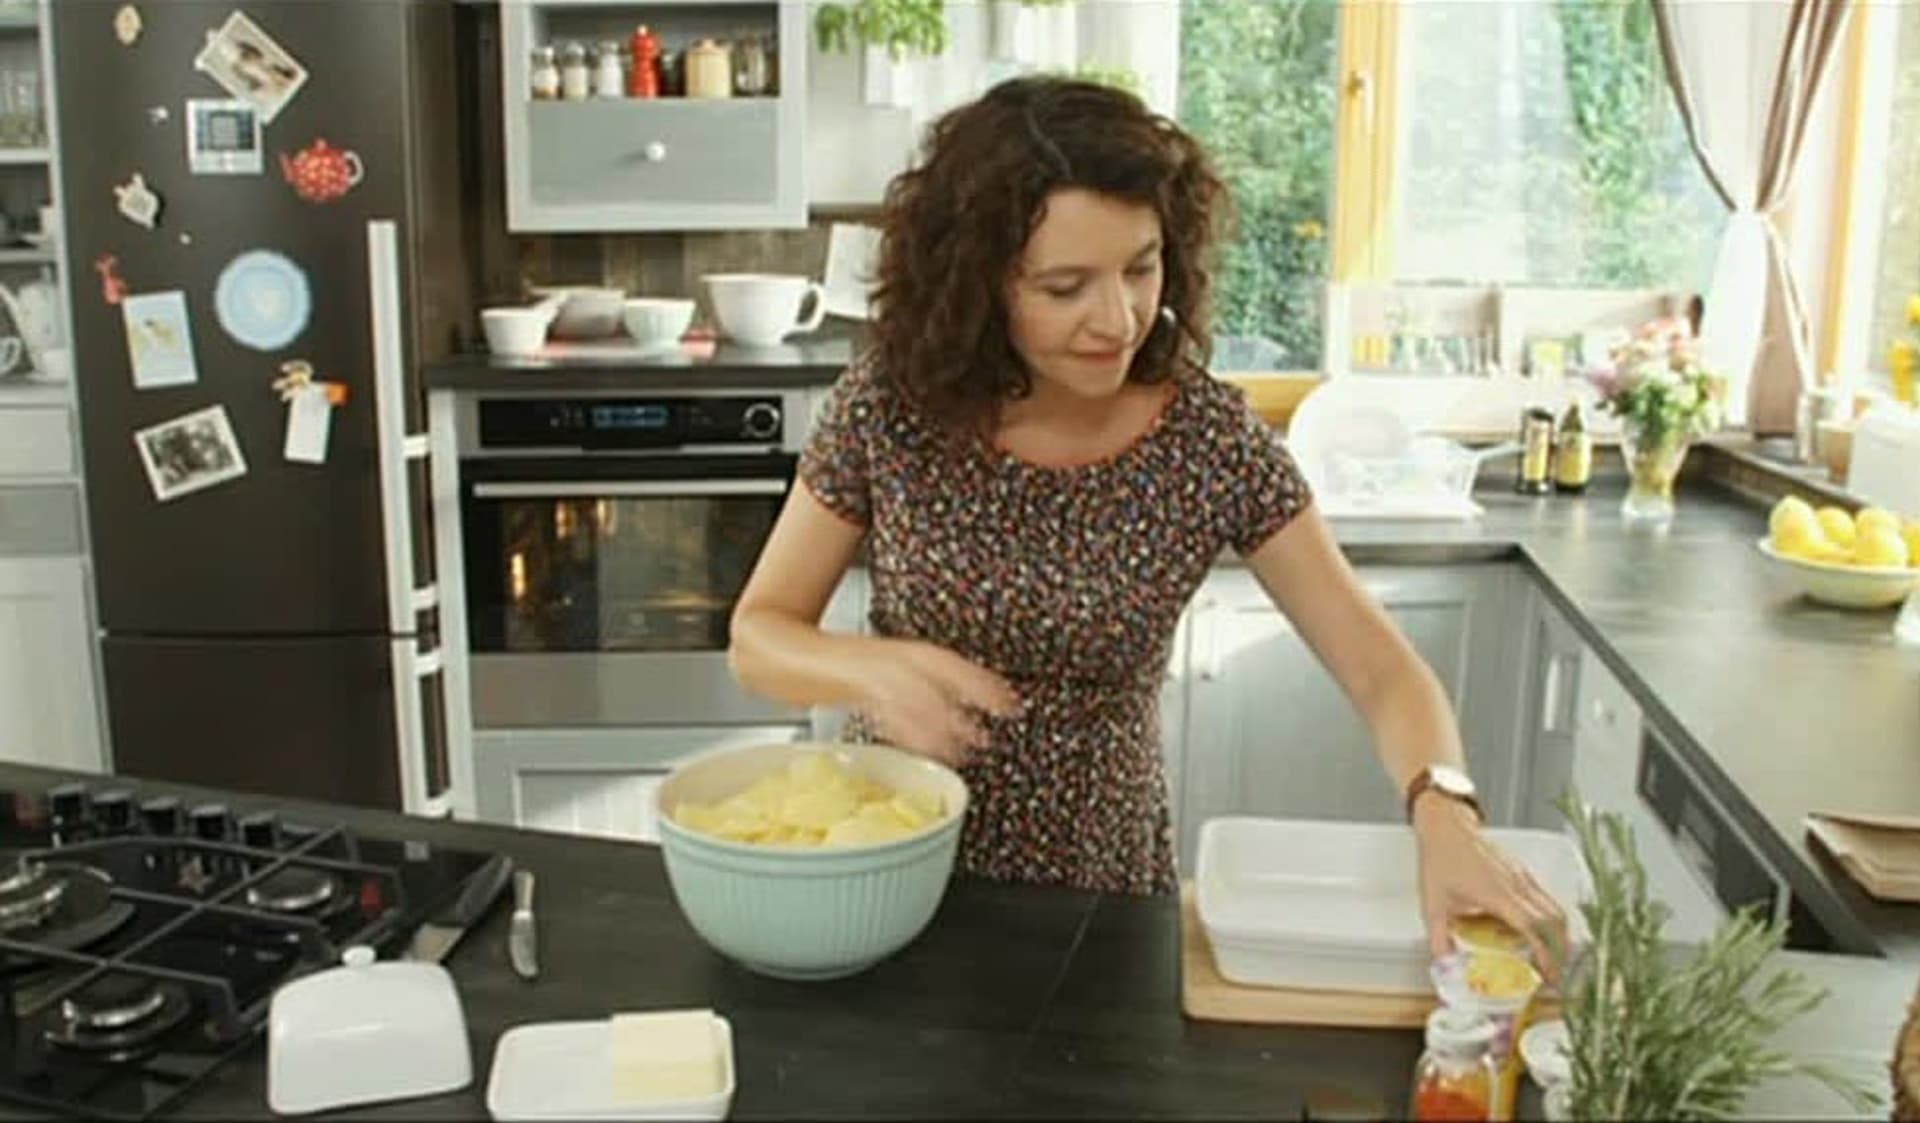 Video VIP zprávy: Kuchařka Karolína není sice profesionálka, ale vaří fantasticky - podle starých receptů!